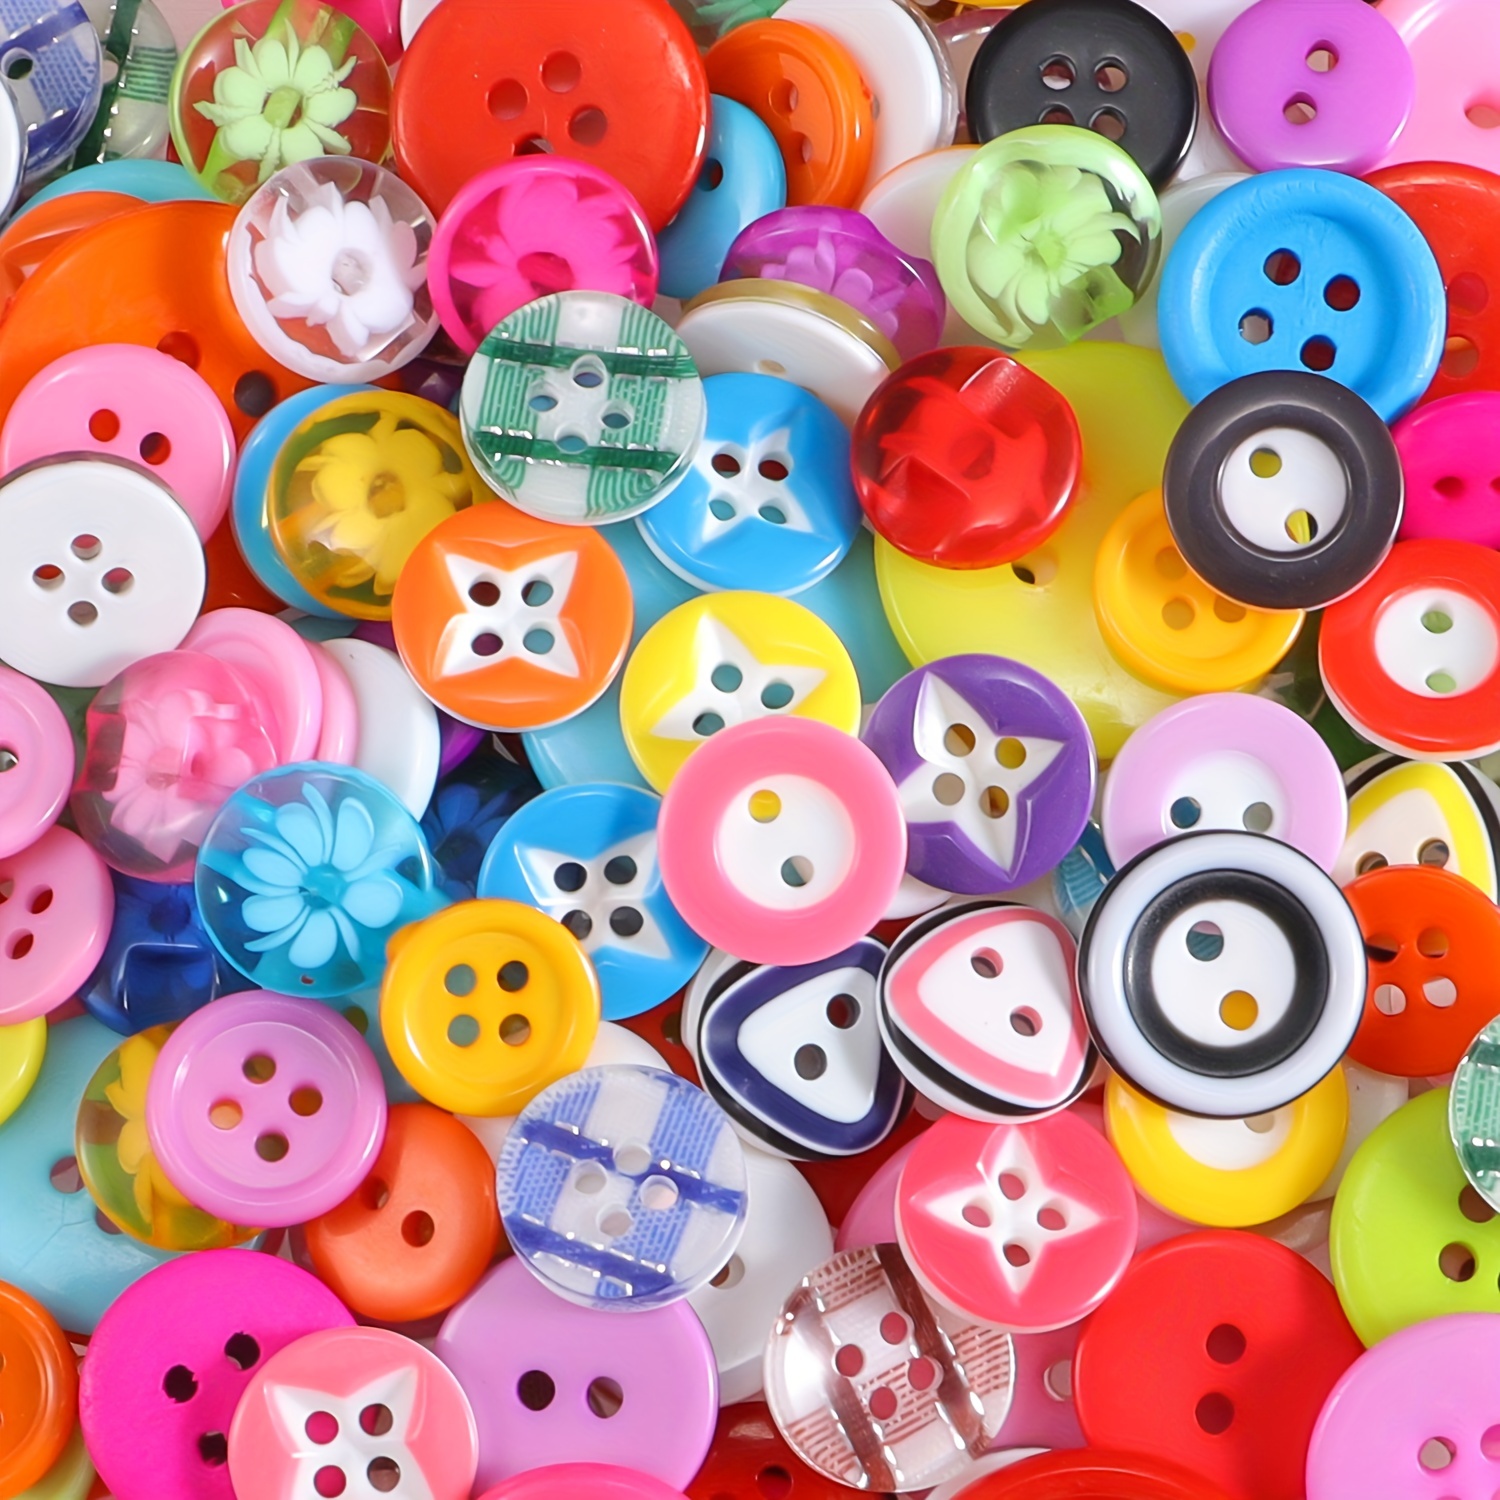 50 piezas DIY de adornos de botones grandes para costura, manualidades,  proyectos, decoración y álbum de